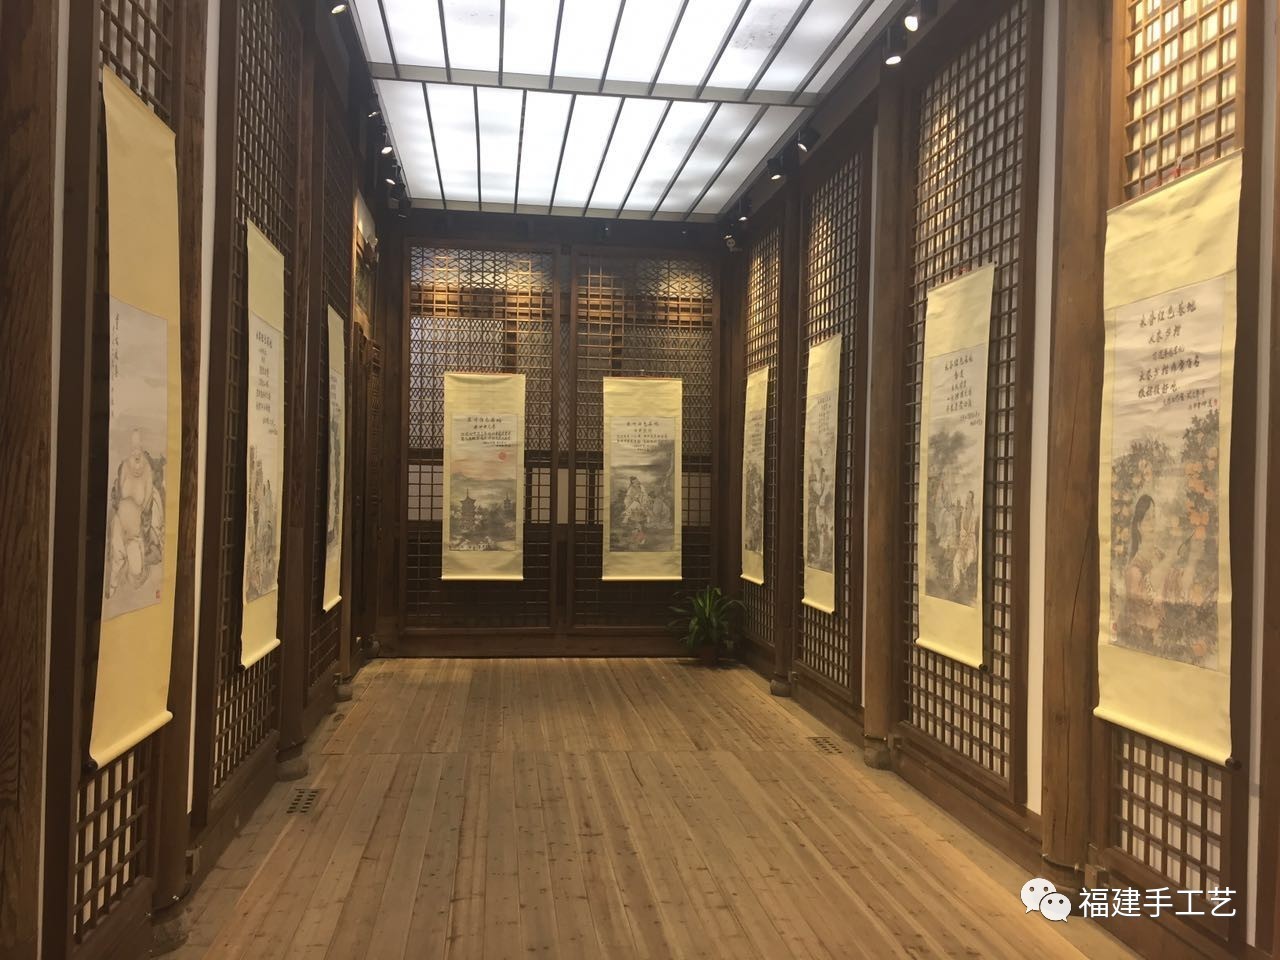 国家级"非遗"永春纸织画到福州展览(8.4-8.13)